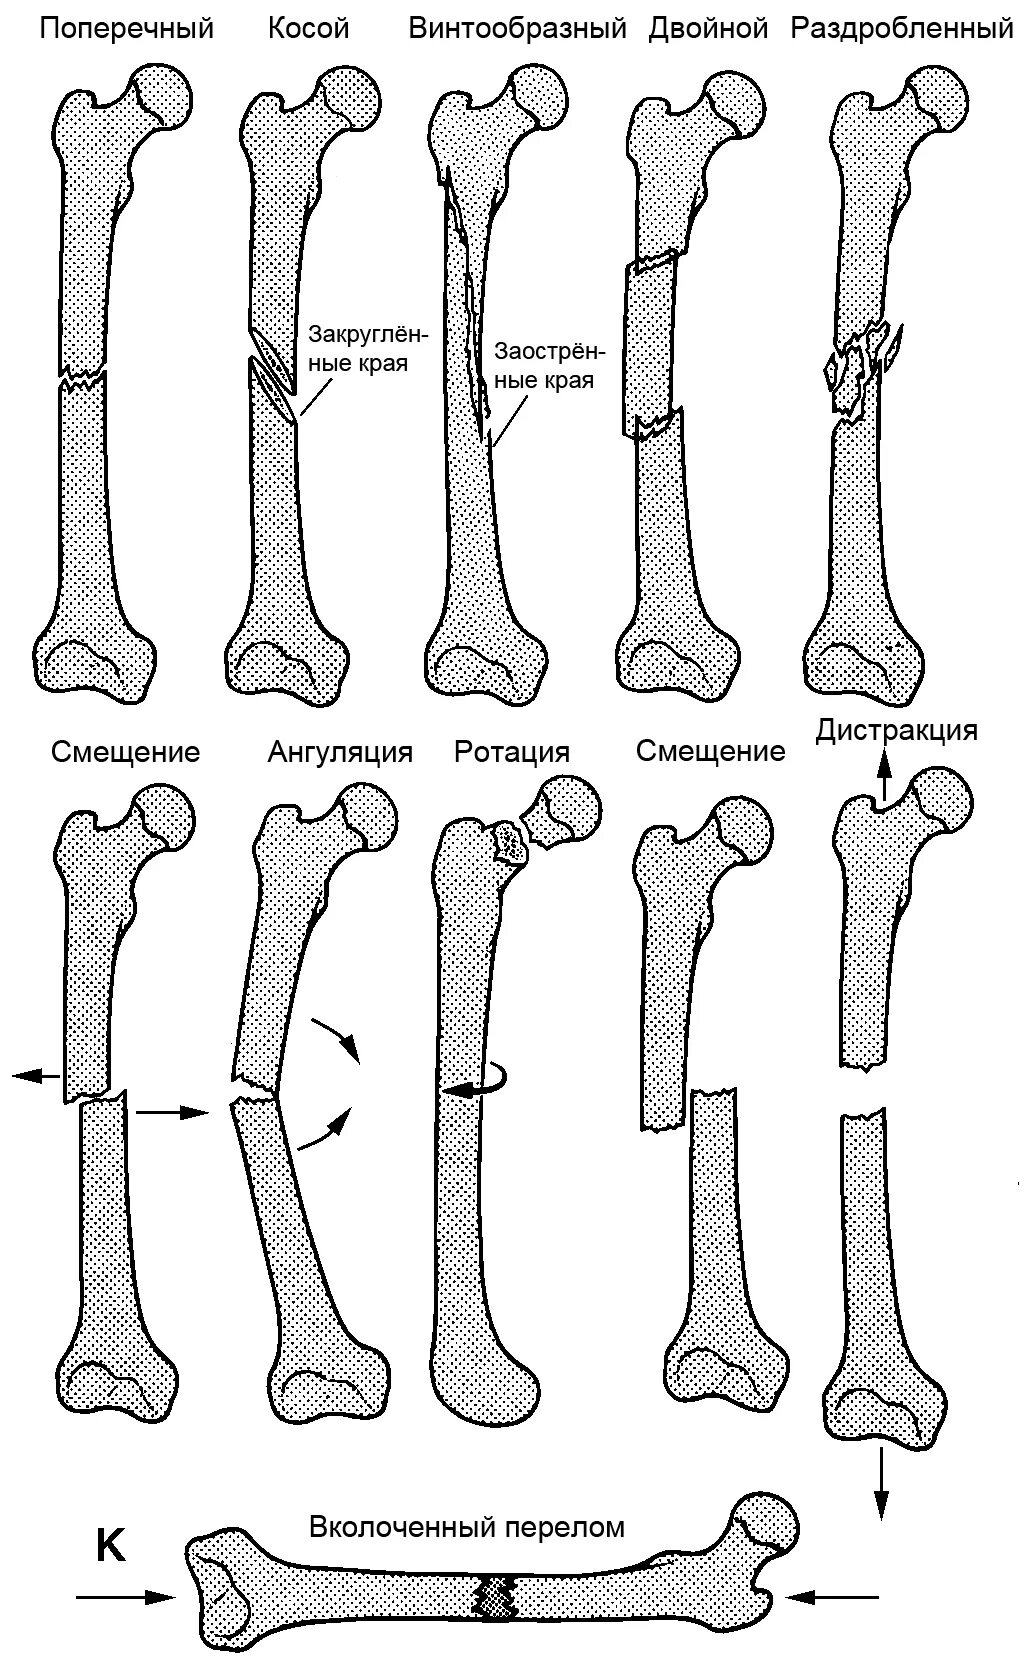 Перелом кости может быть каким. Классификация переломов диафизарной части плечевой кости. Винтообразный оскольчатый перелом бедра. Смещение отломков при переломе бедренной кости. Классификация диафизарных переломов бедренной кости.